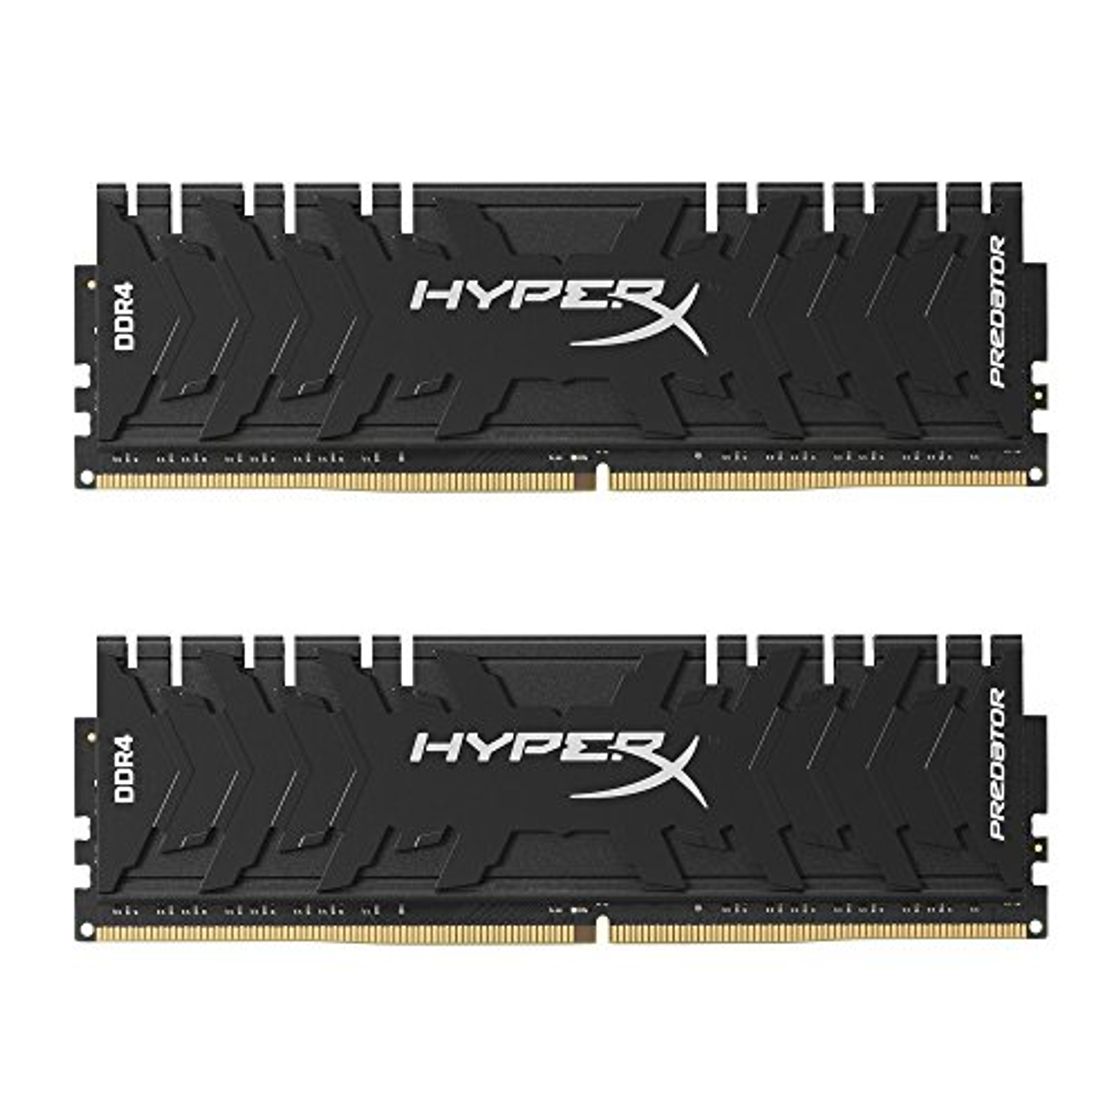 HyperX Predator - Memoria RAM de 16 GB